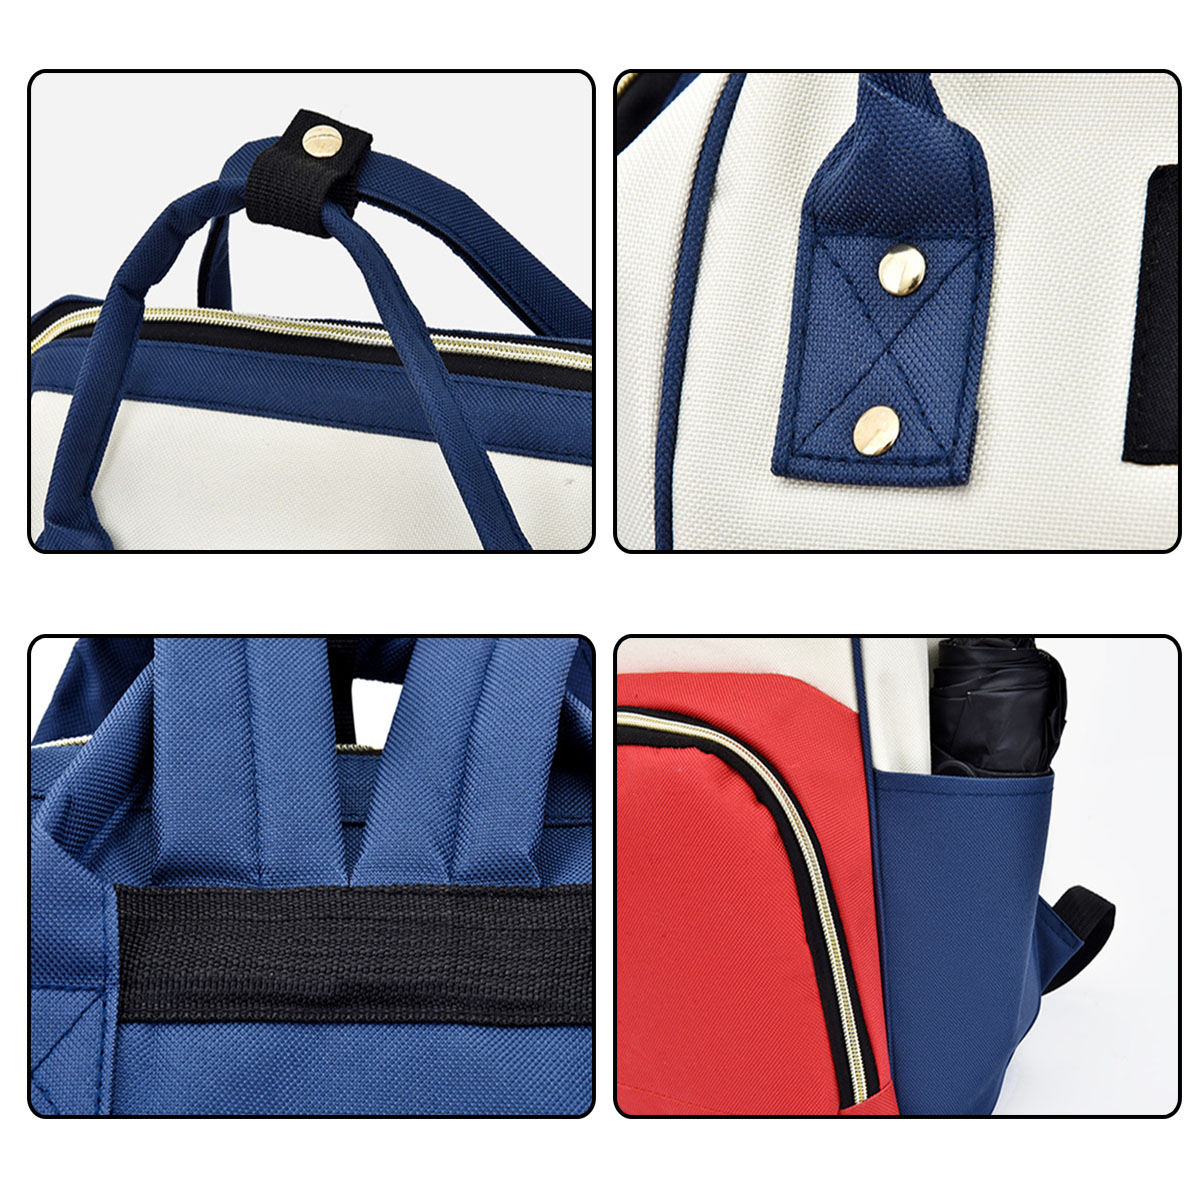 36L-Canvas-Mother-Baby-Bag-Multifunctional-Diaper-Bag-Shoulder-Bag-Backpack-Outdoor-Camping-Travel-1736483-5